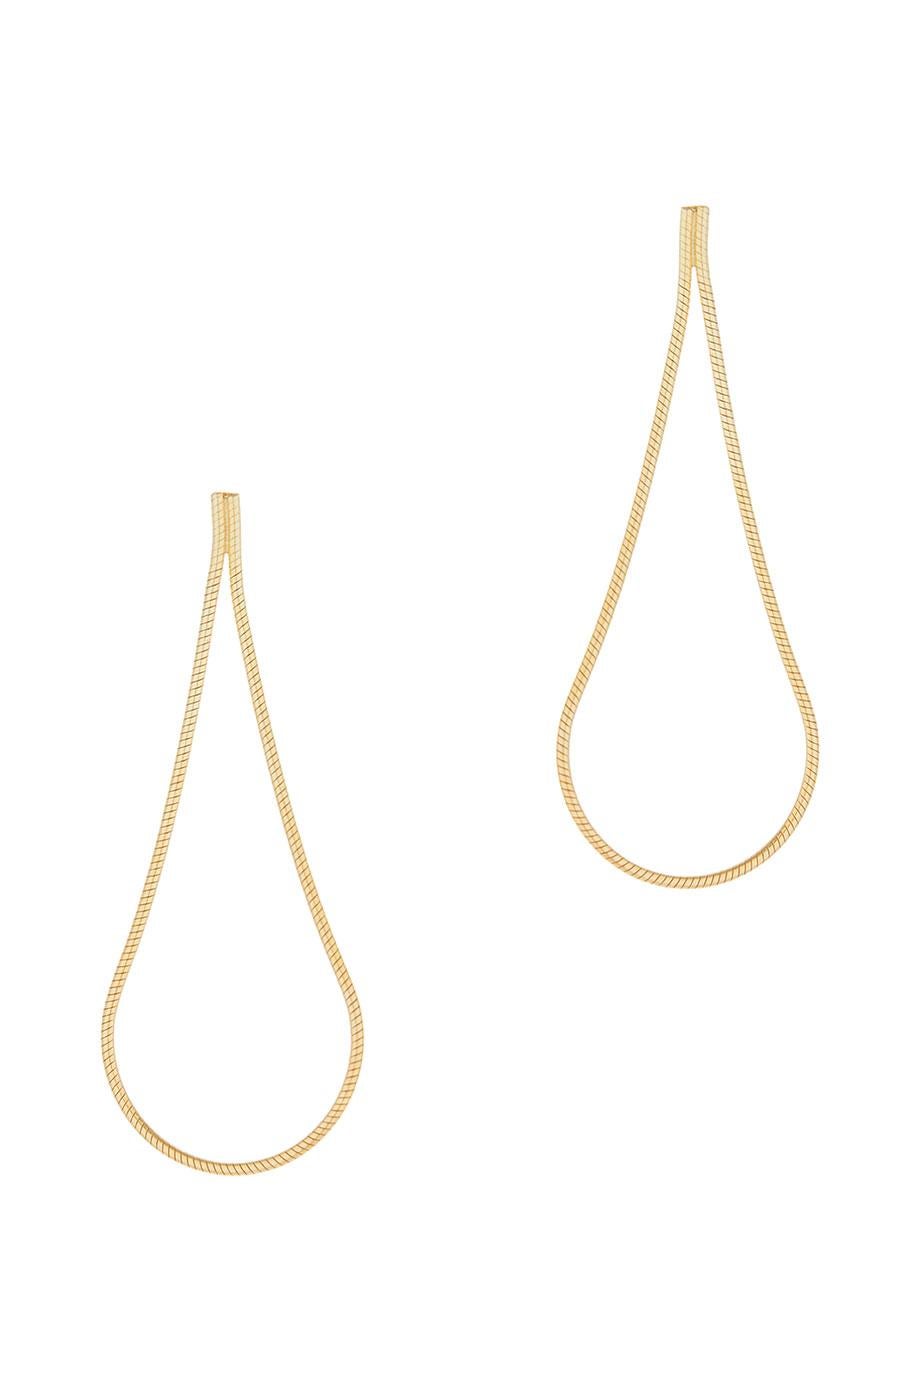 Earrings Smart Long Drops Snake Chain 18 Karat Gold-Plated Silver Greek Jewelry For Sale 8